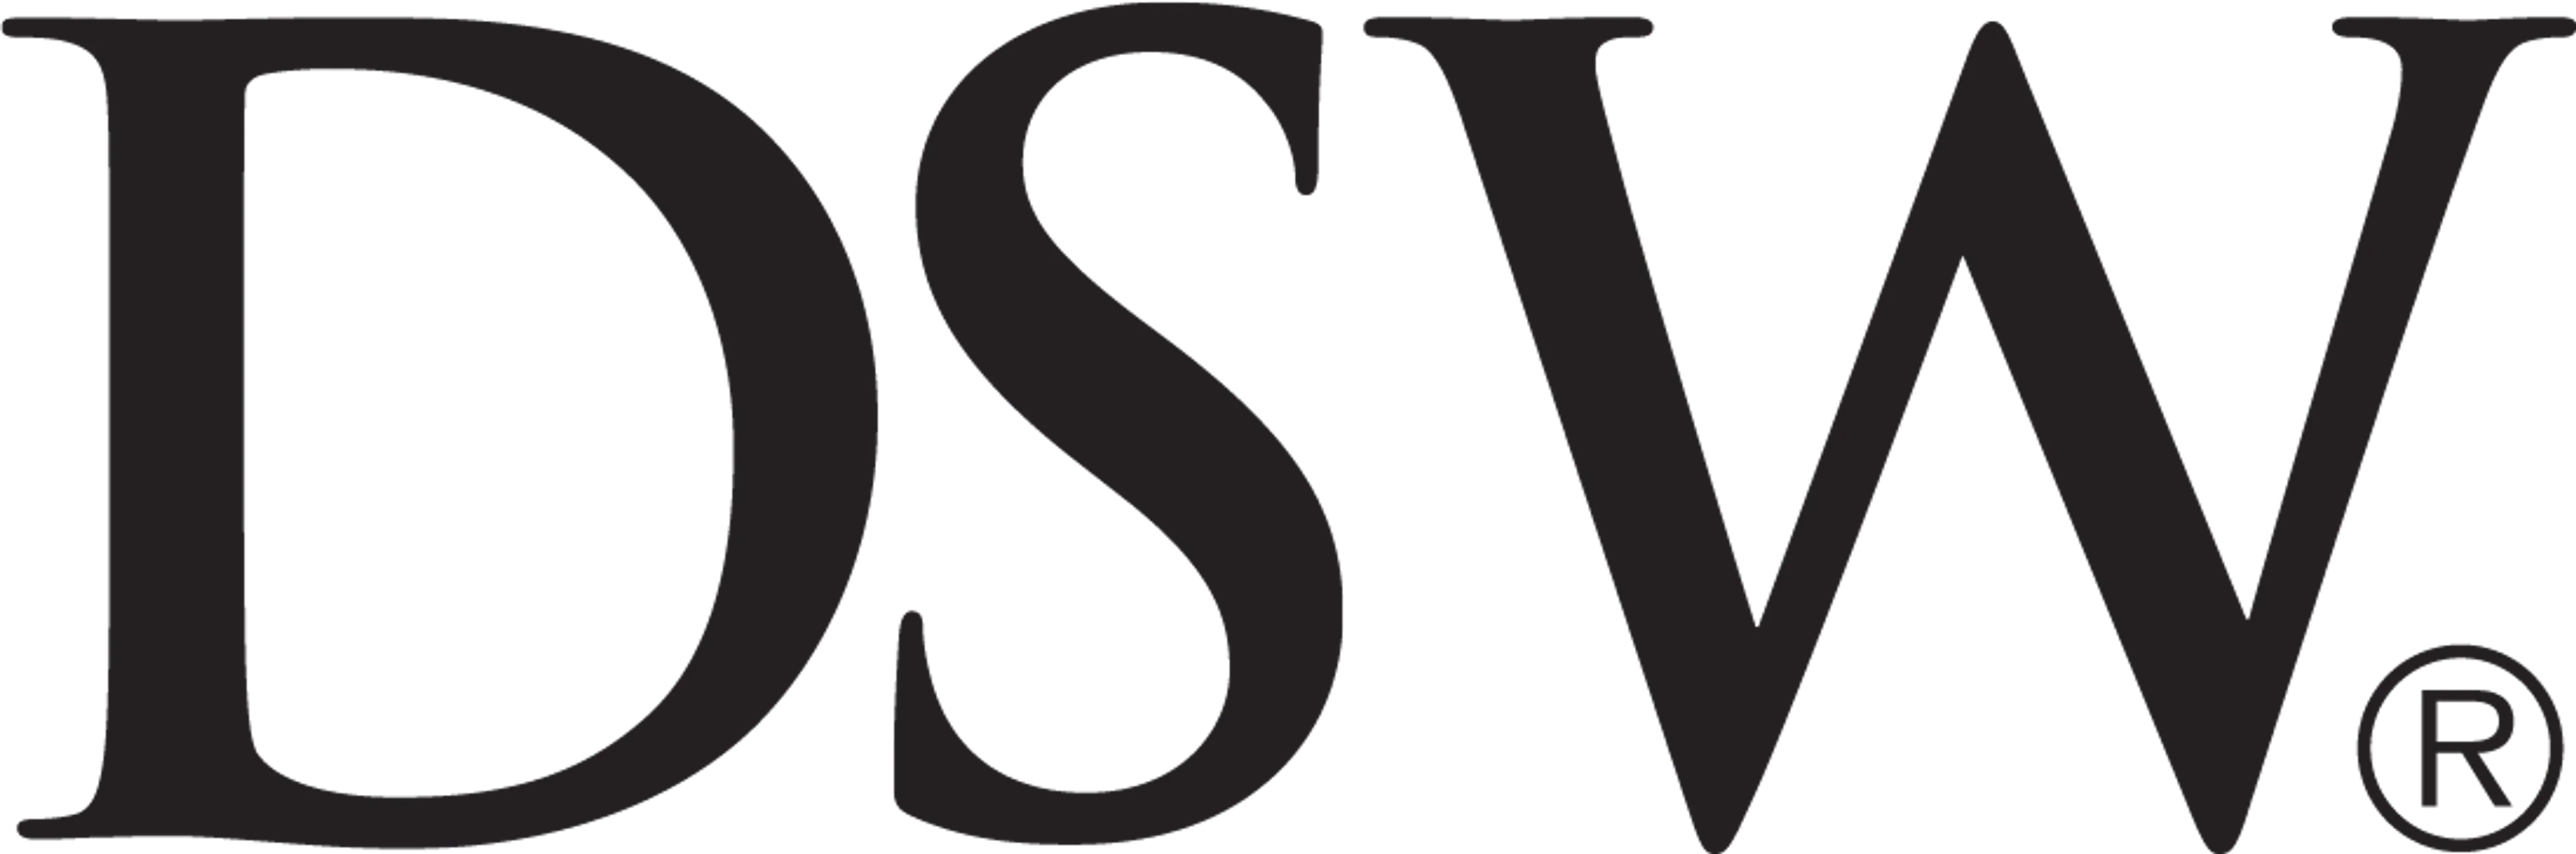 DSW logo